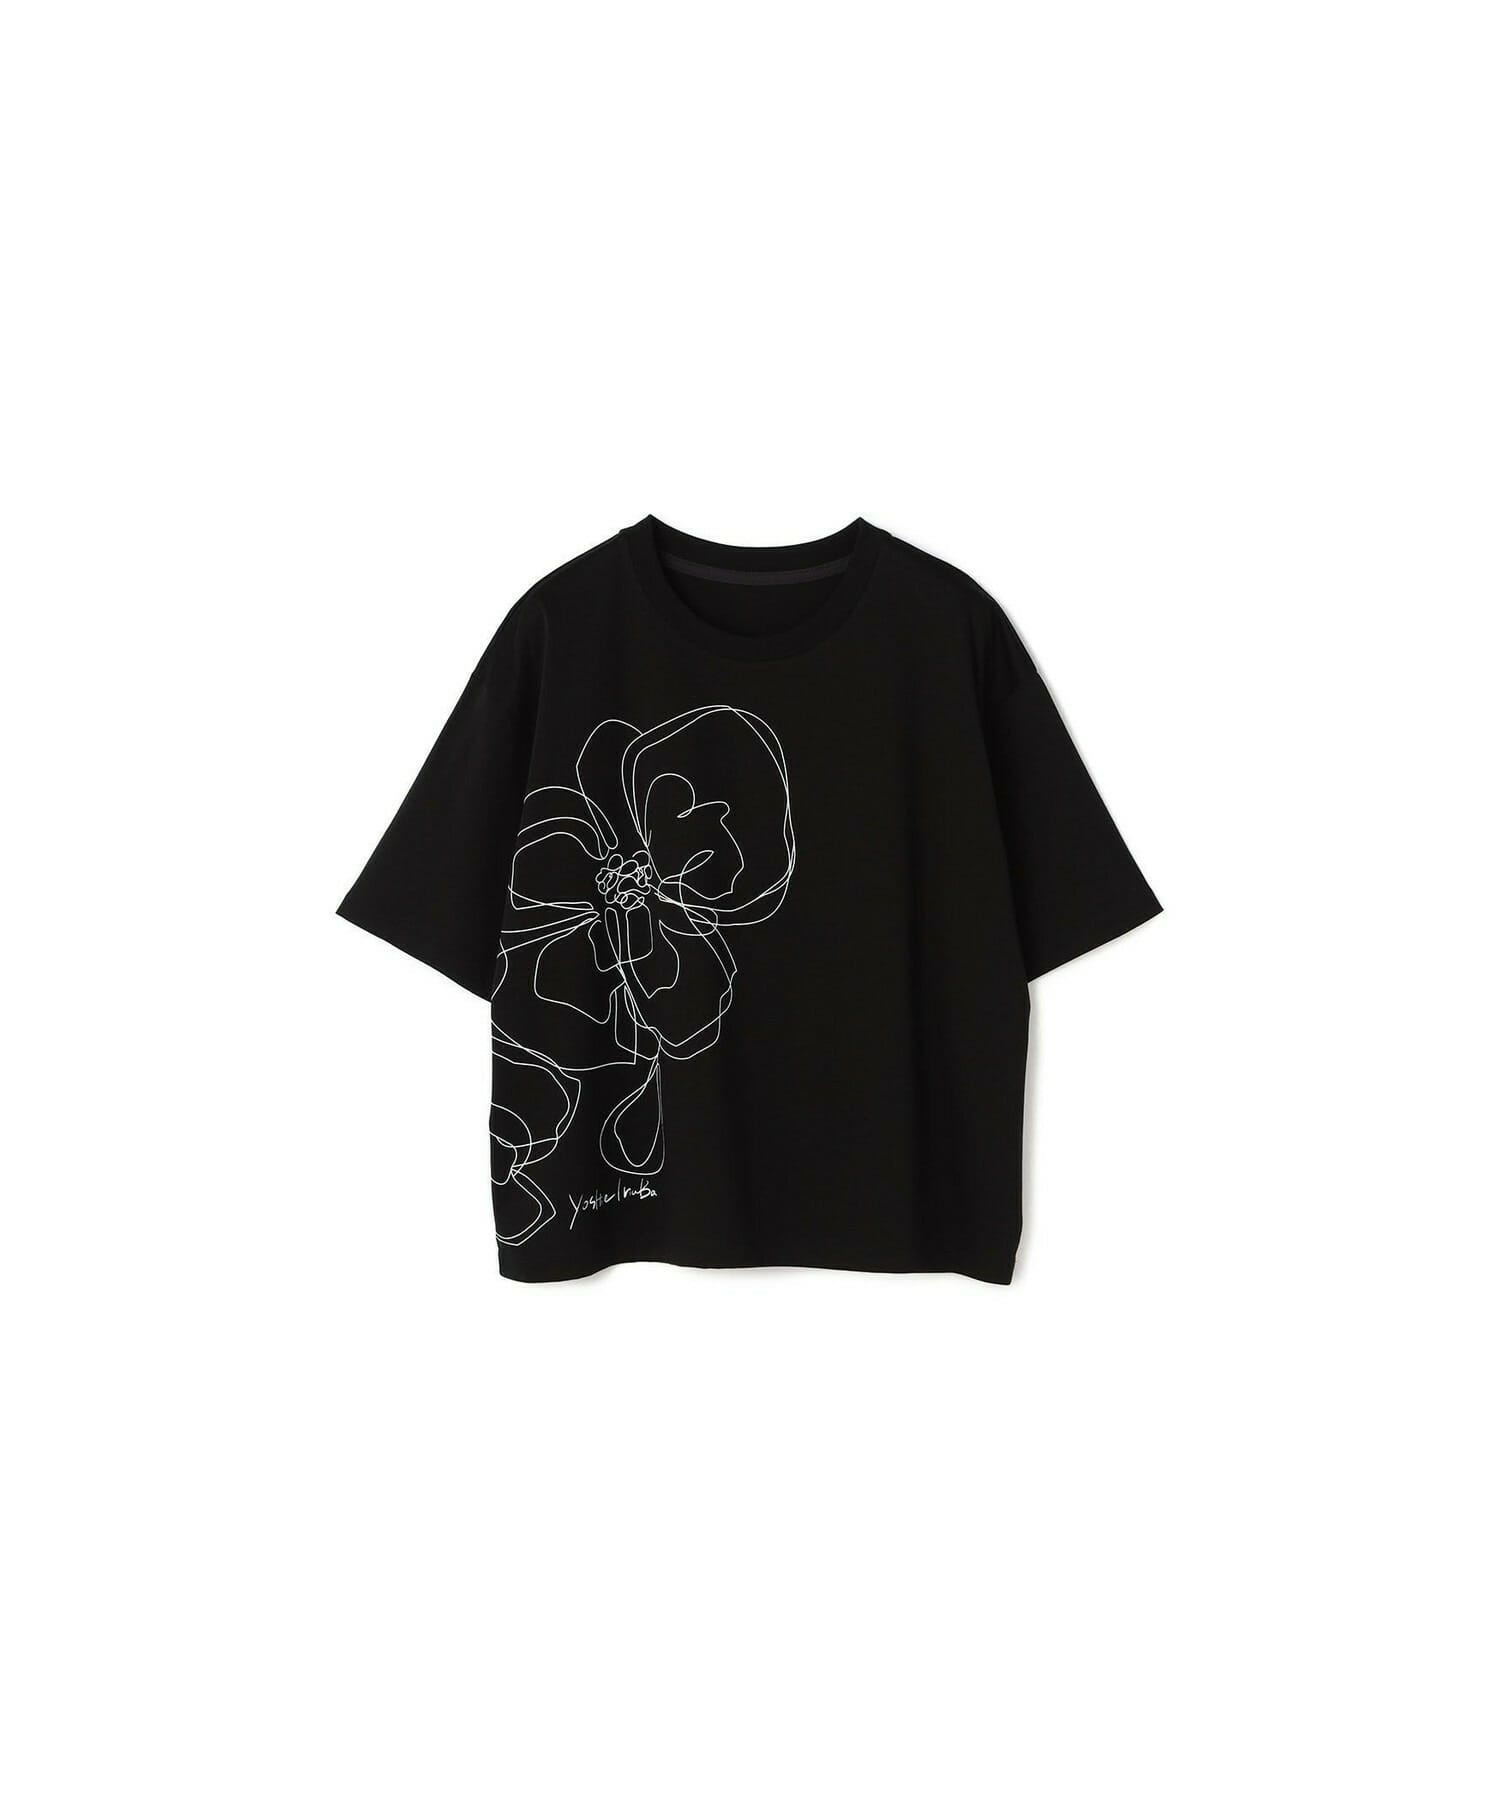 【yoshie inaba】コットンライトスムースTシャツ 詳細画像 ブラック 1